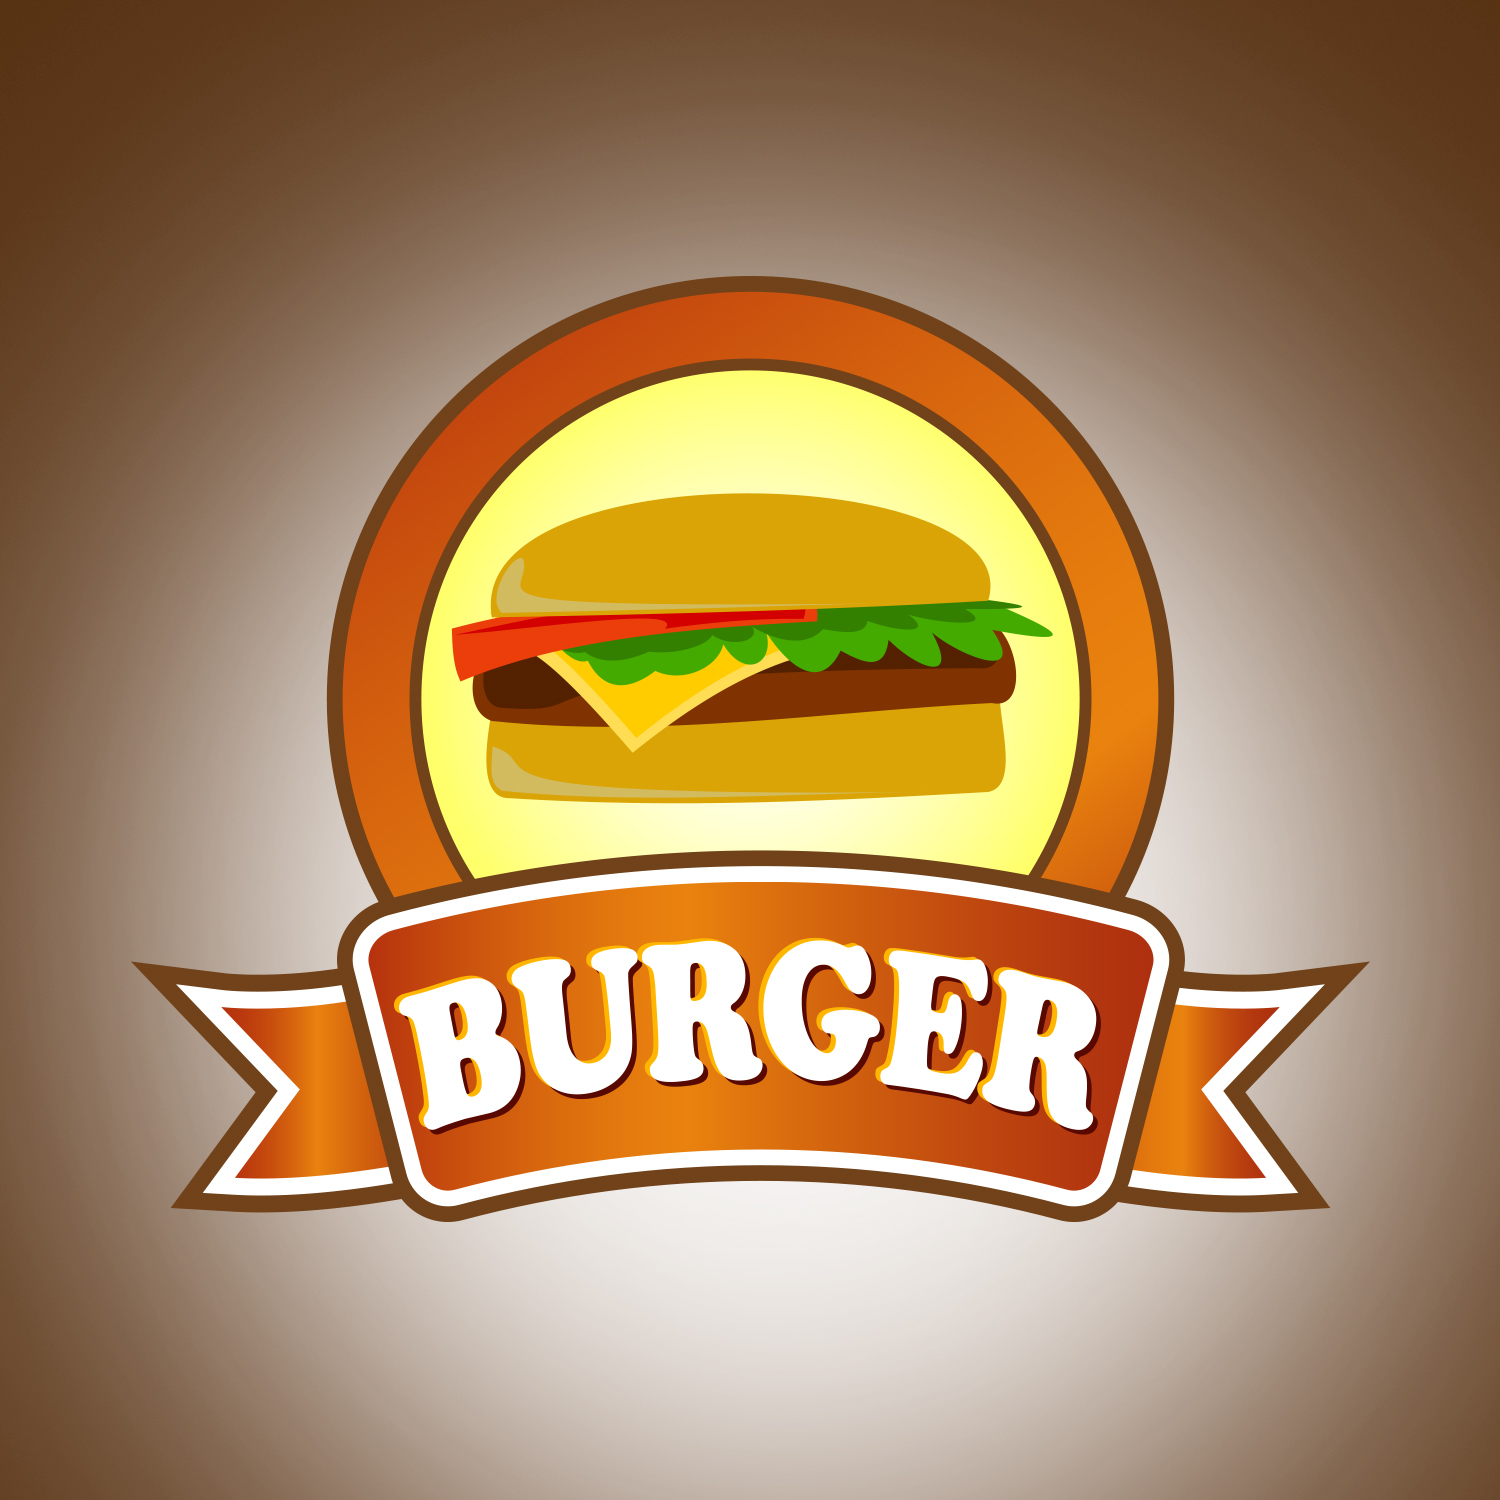 burger logo ideas 1